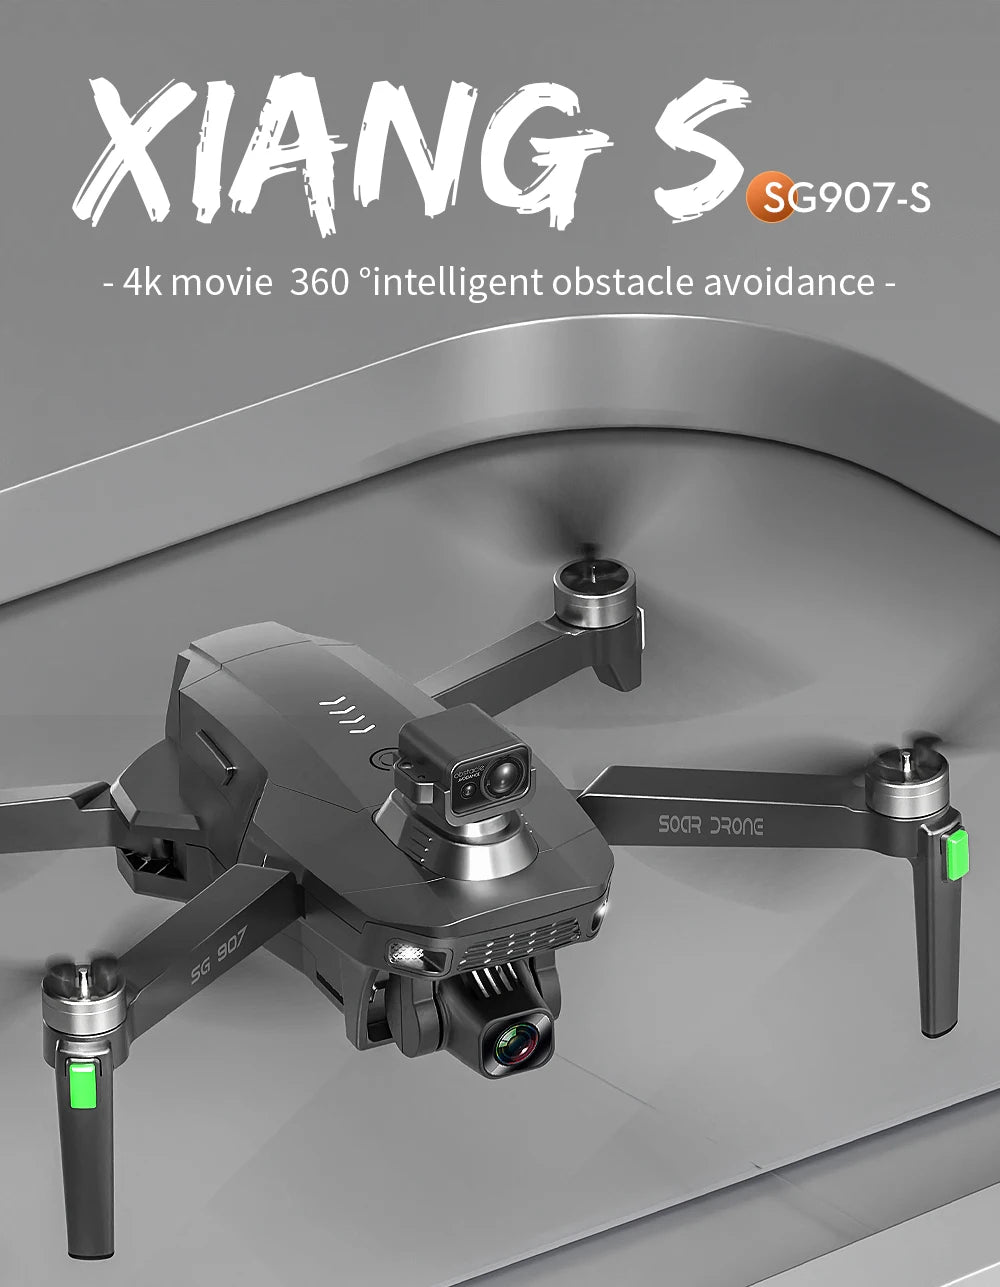 SG907S Drone, XIANG $ SG9O7-S 4k movie 360 %inte